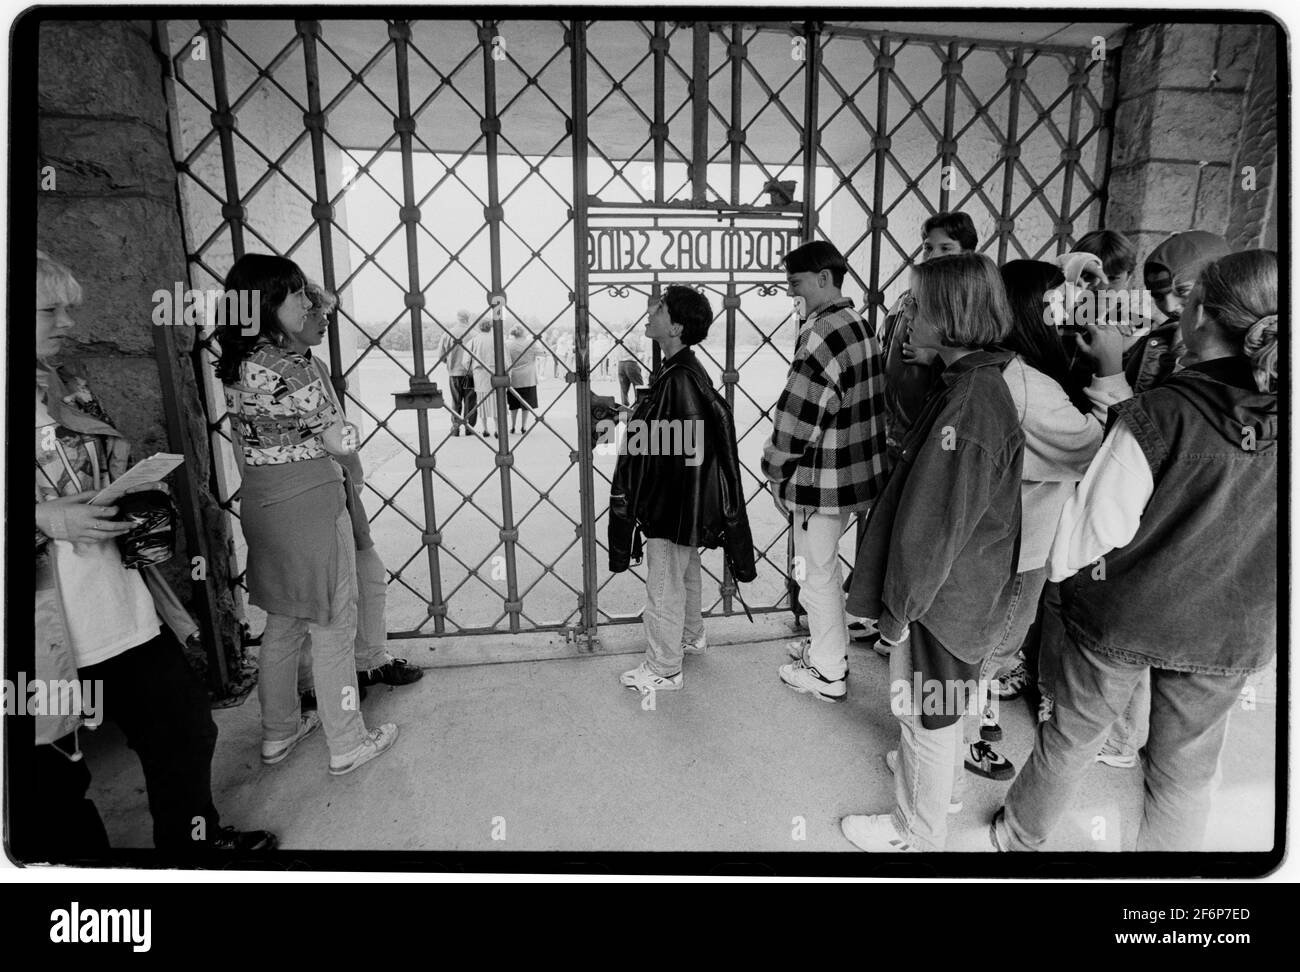 Camp de concentration de Buchenwald Weimar en Thuringe Allemagne 1994 de jeunes élèves visitent le camp. 'Jedem das Seine' fait partie de la porte principale qui fait face aux détenus. Il s'agit de la traduction allemande littérale de l'expression latine suum cuique, signifiant « à chacun de ses propres » ou « à chacun de ce qu'il mérite ». Banque D'Images